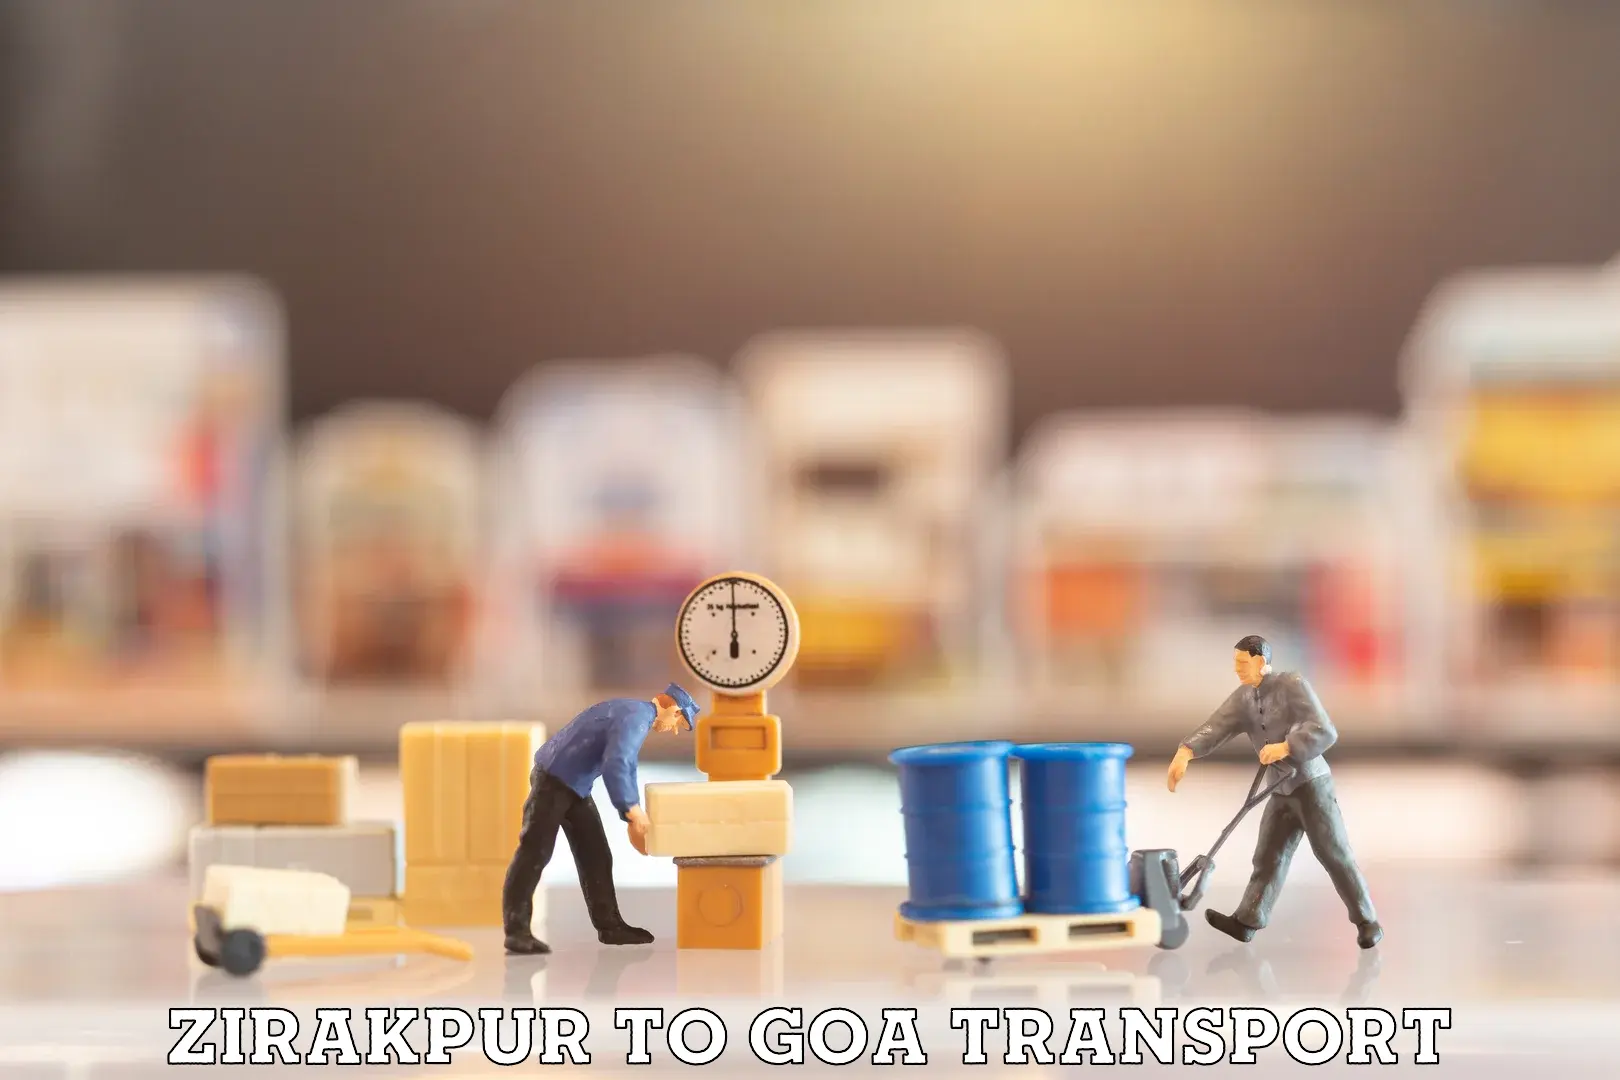 Best transport services in India Zirakpur to IIT Goa